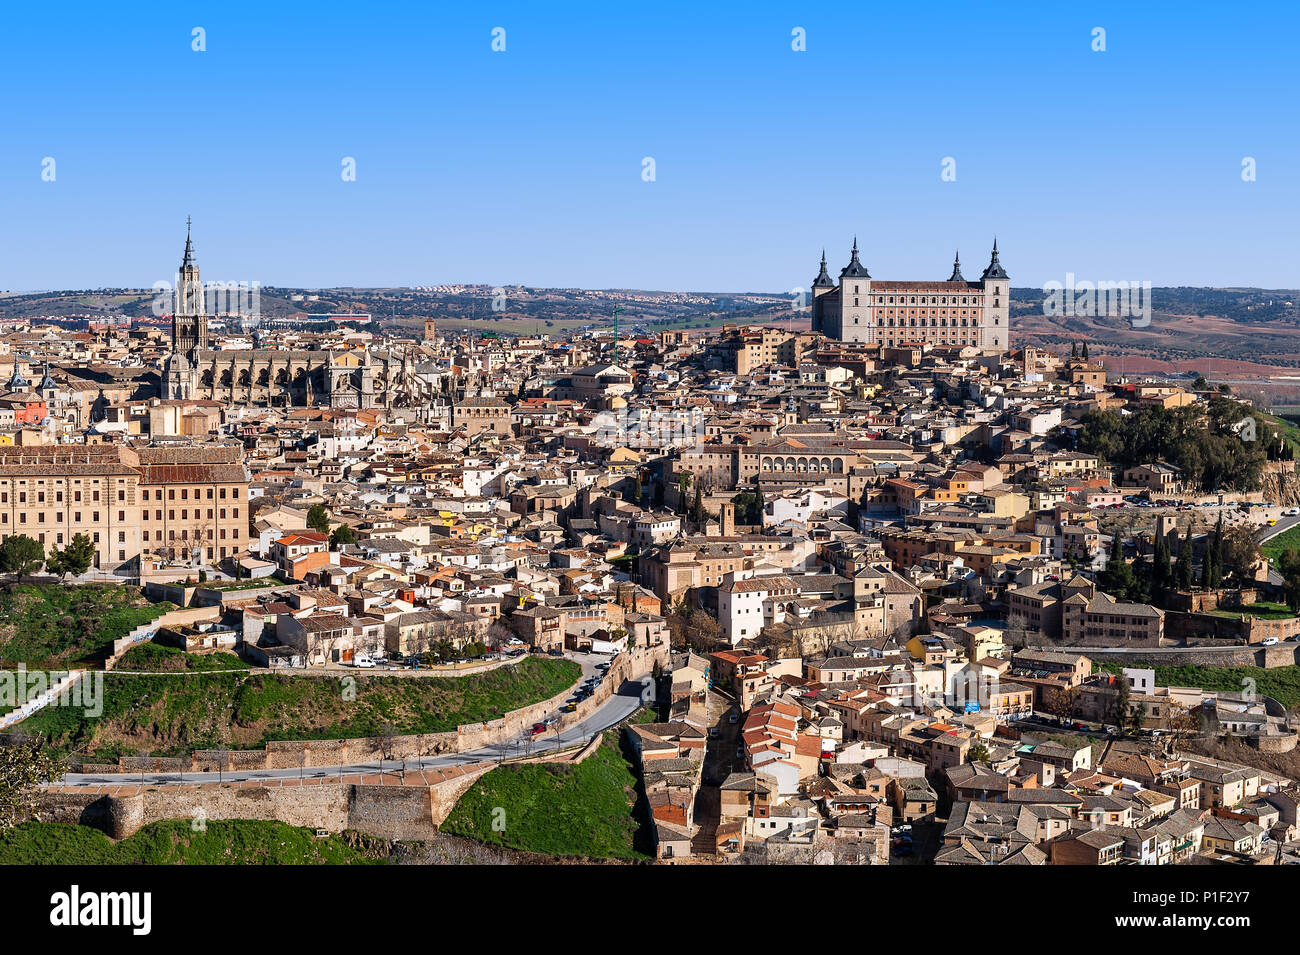 Paesaggio urbano in vista della città fortificata di Toledo, Spagna. Foto Stock